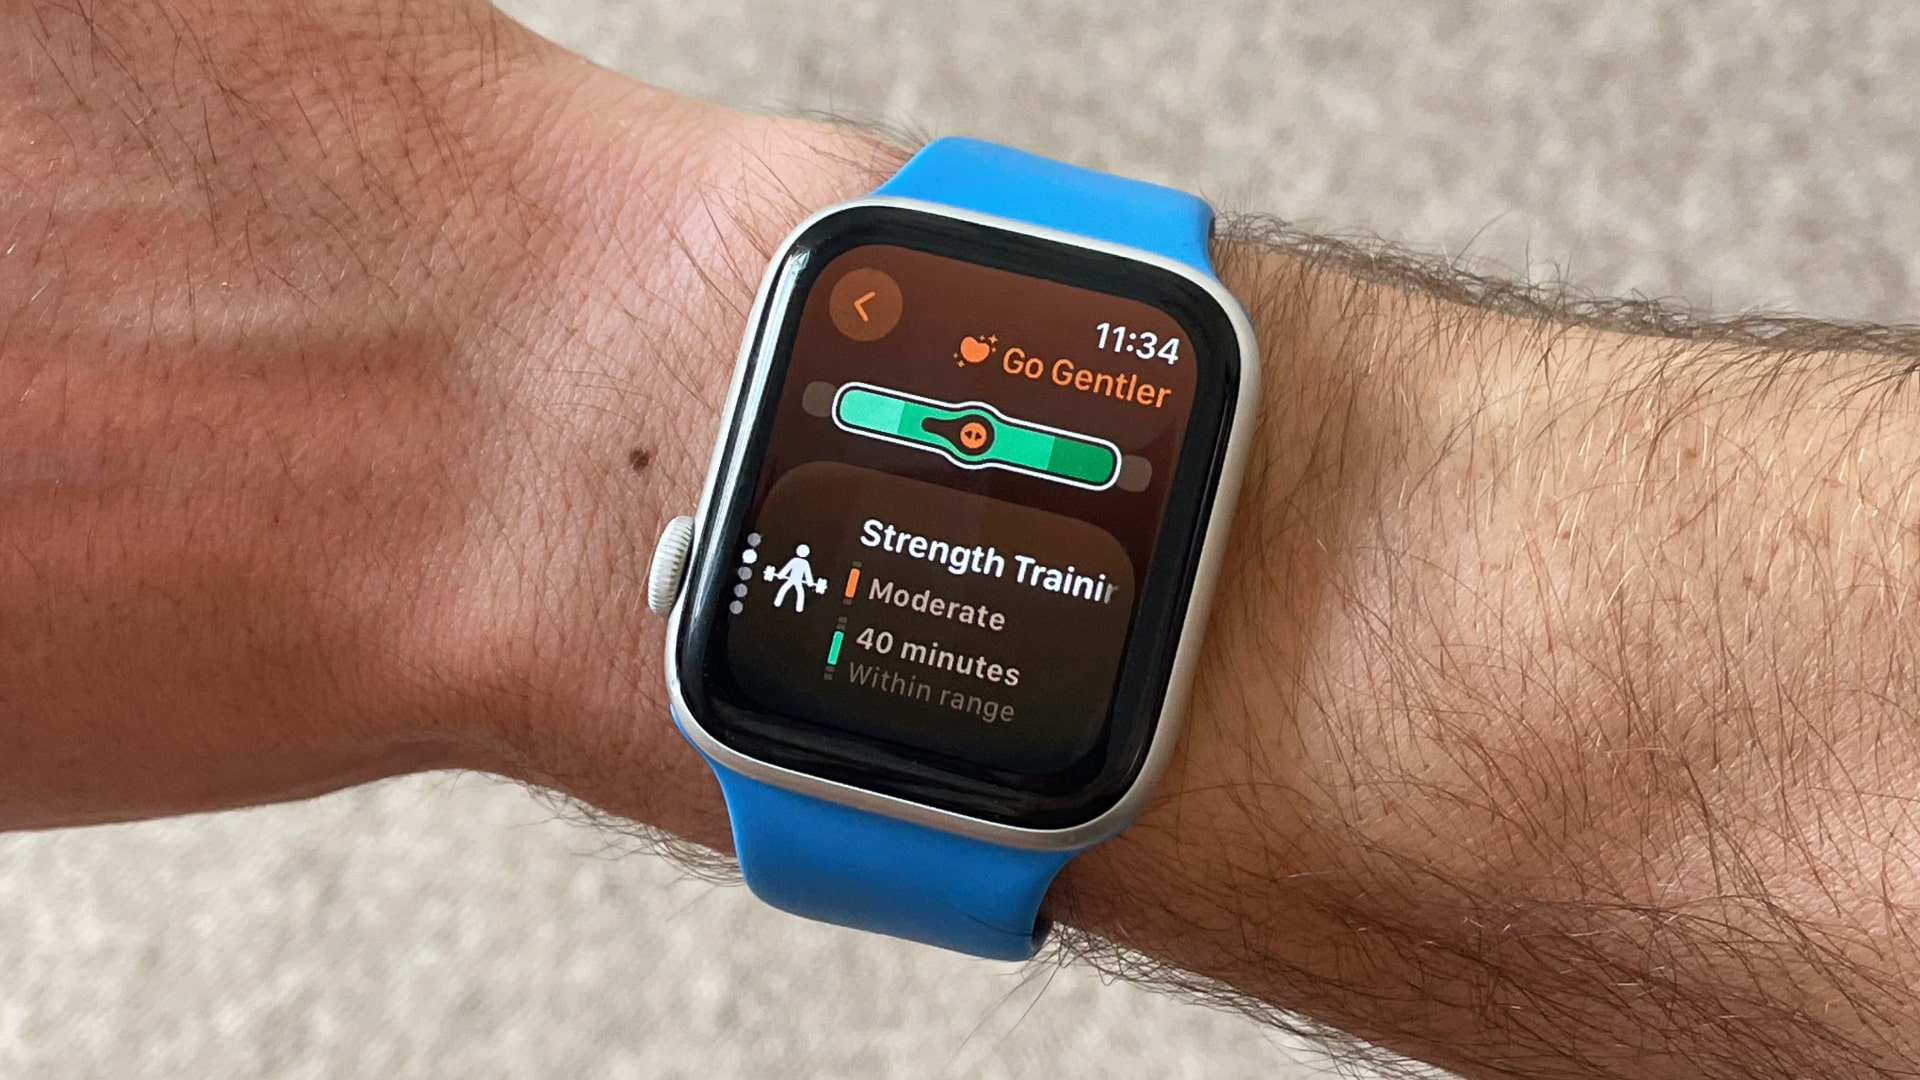 Una persona que lleva un Apple Watch con la aplicación Gentler Streak en la esfera del reloj.